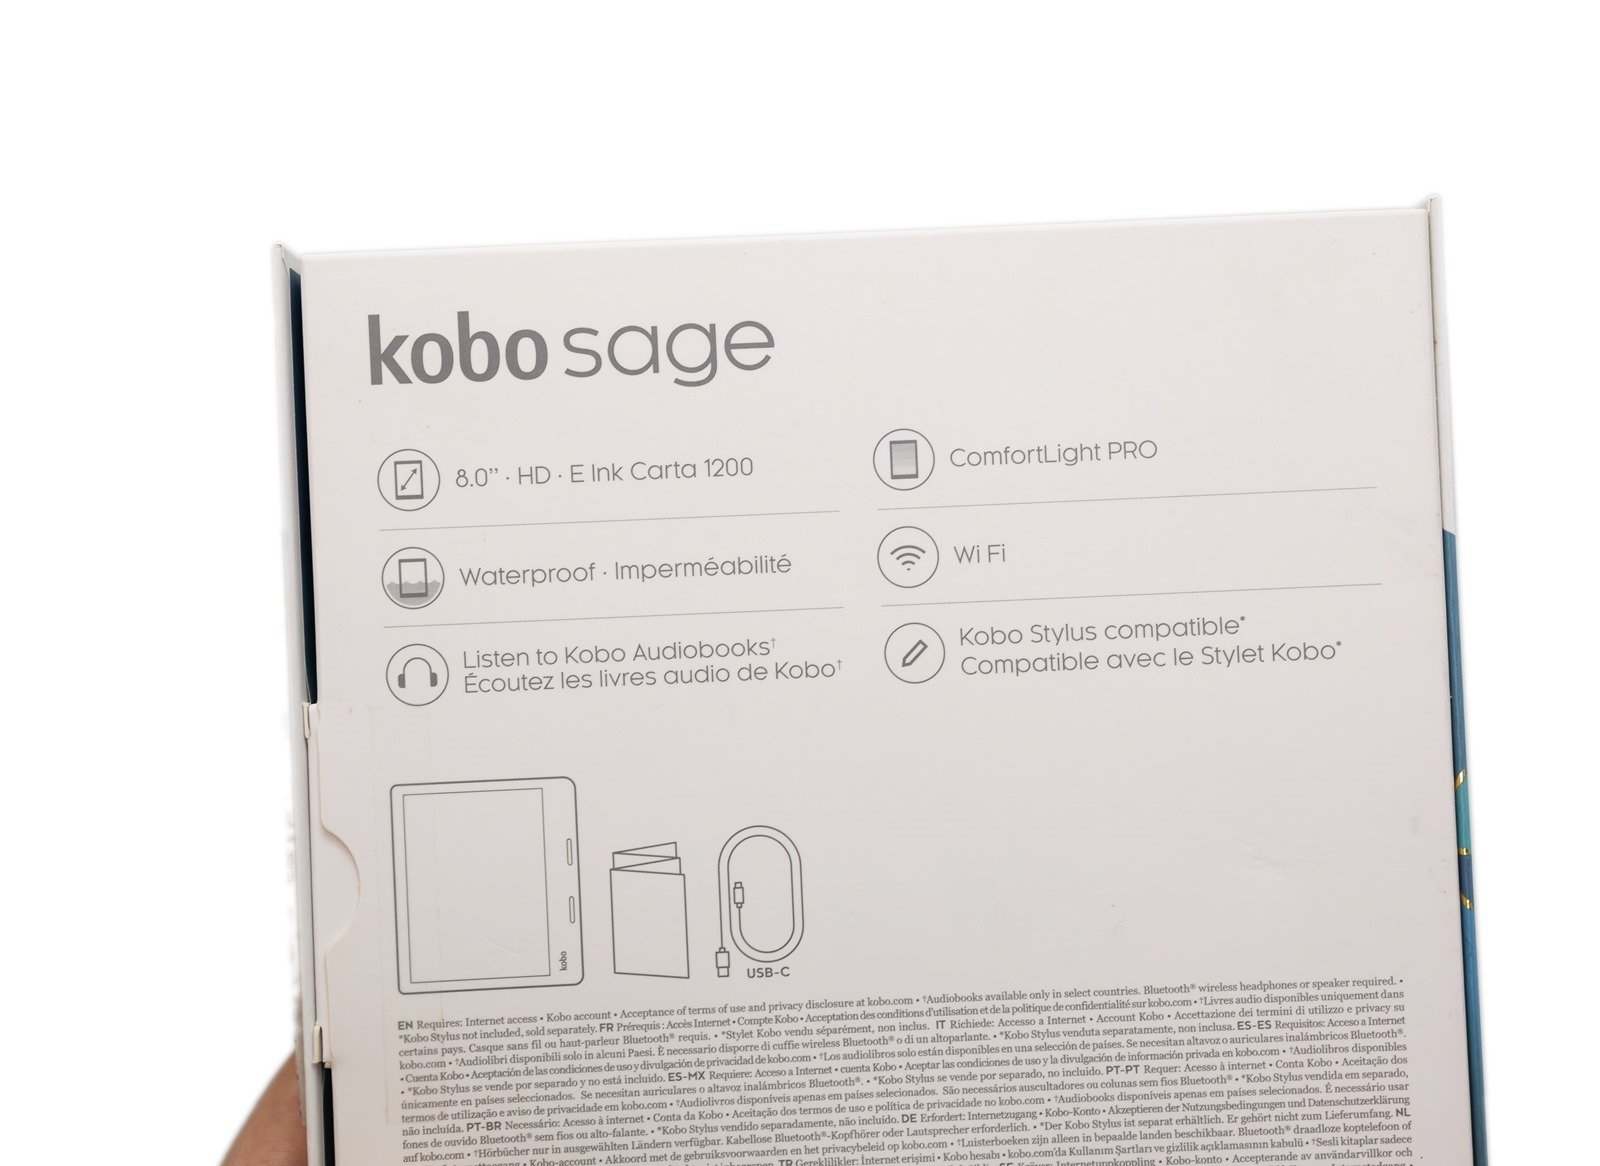 實測 KOBO Sage 電子書閱讀器隨處看隨處寫！PChome 24h 購物書店購買 Kobo 電子書超方便！ @3C 達人廖阿輝